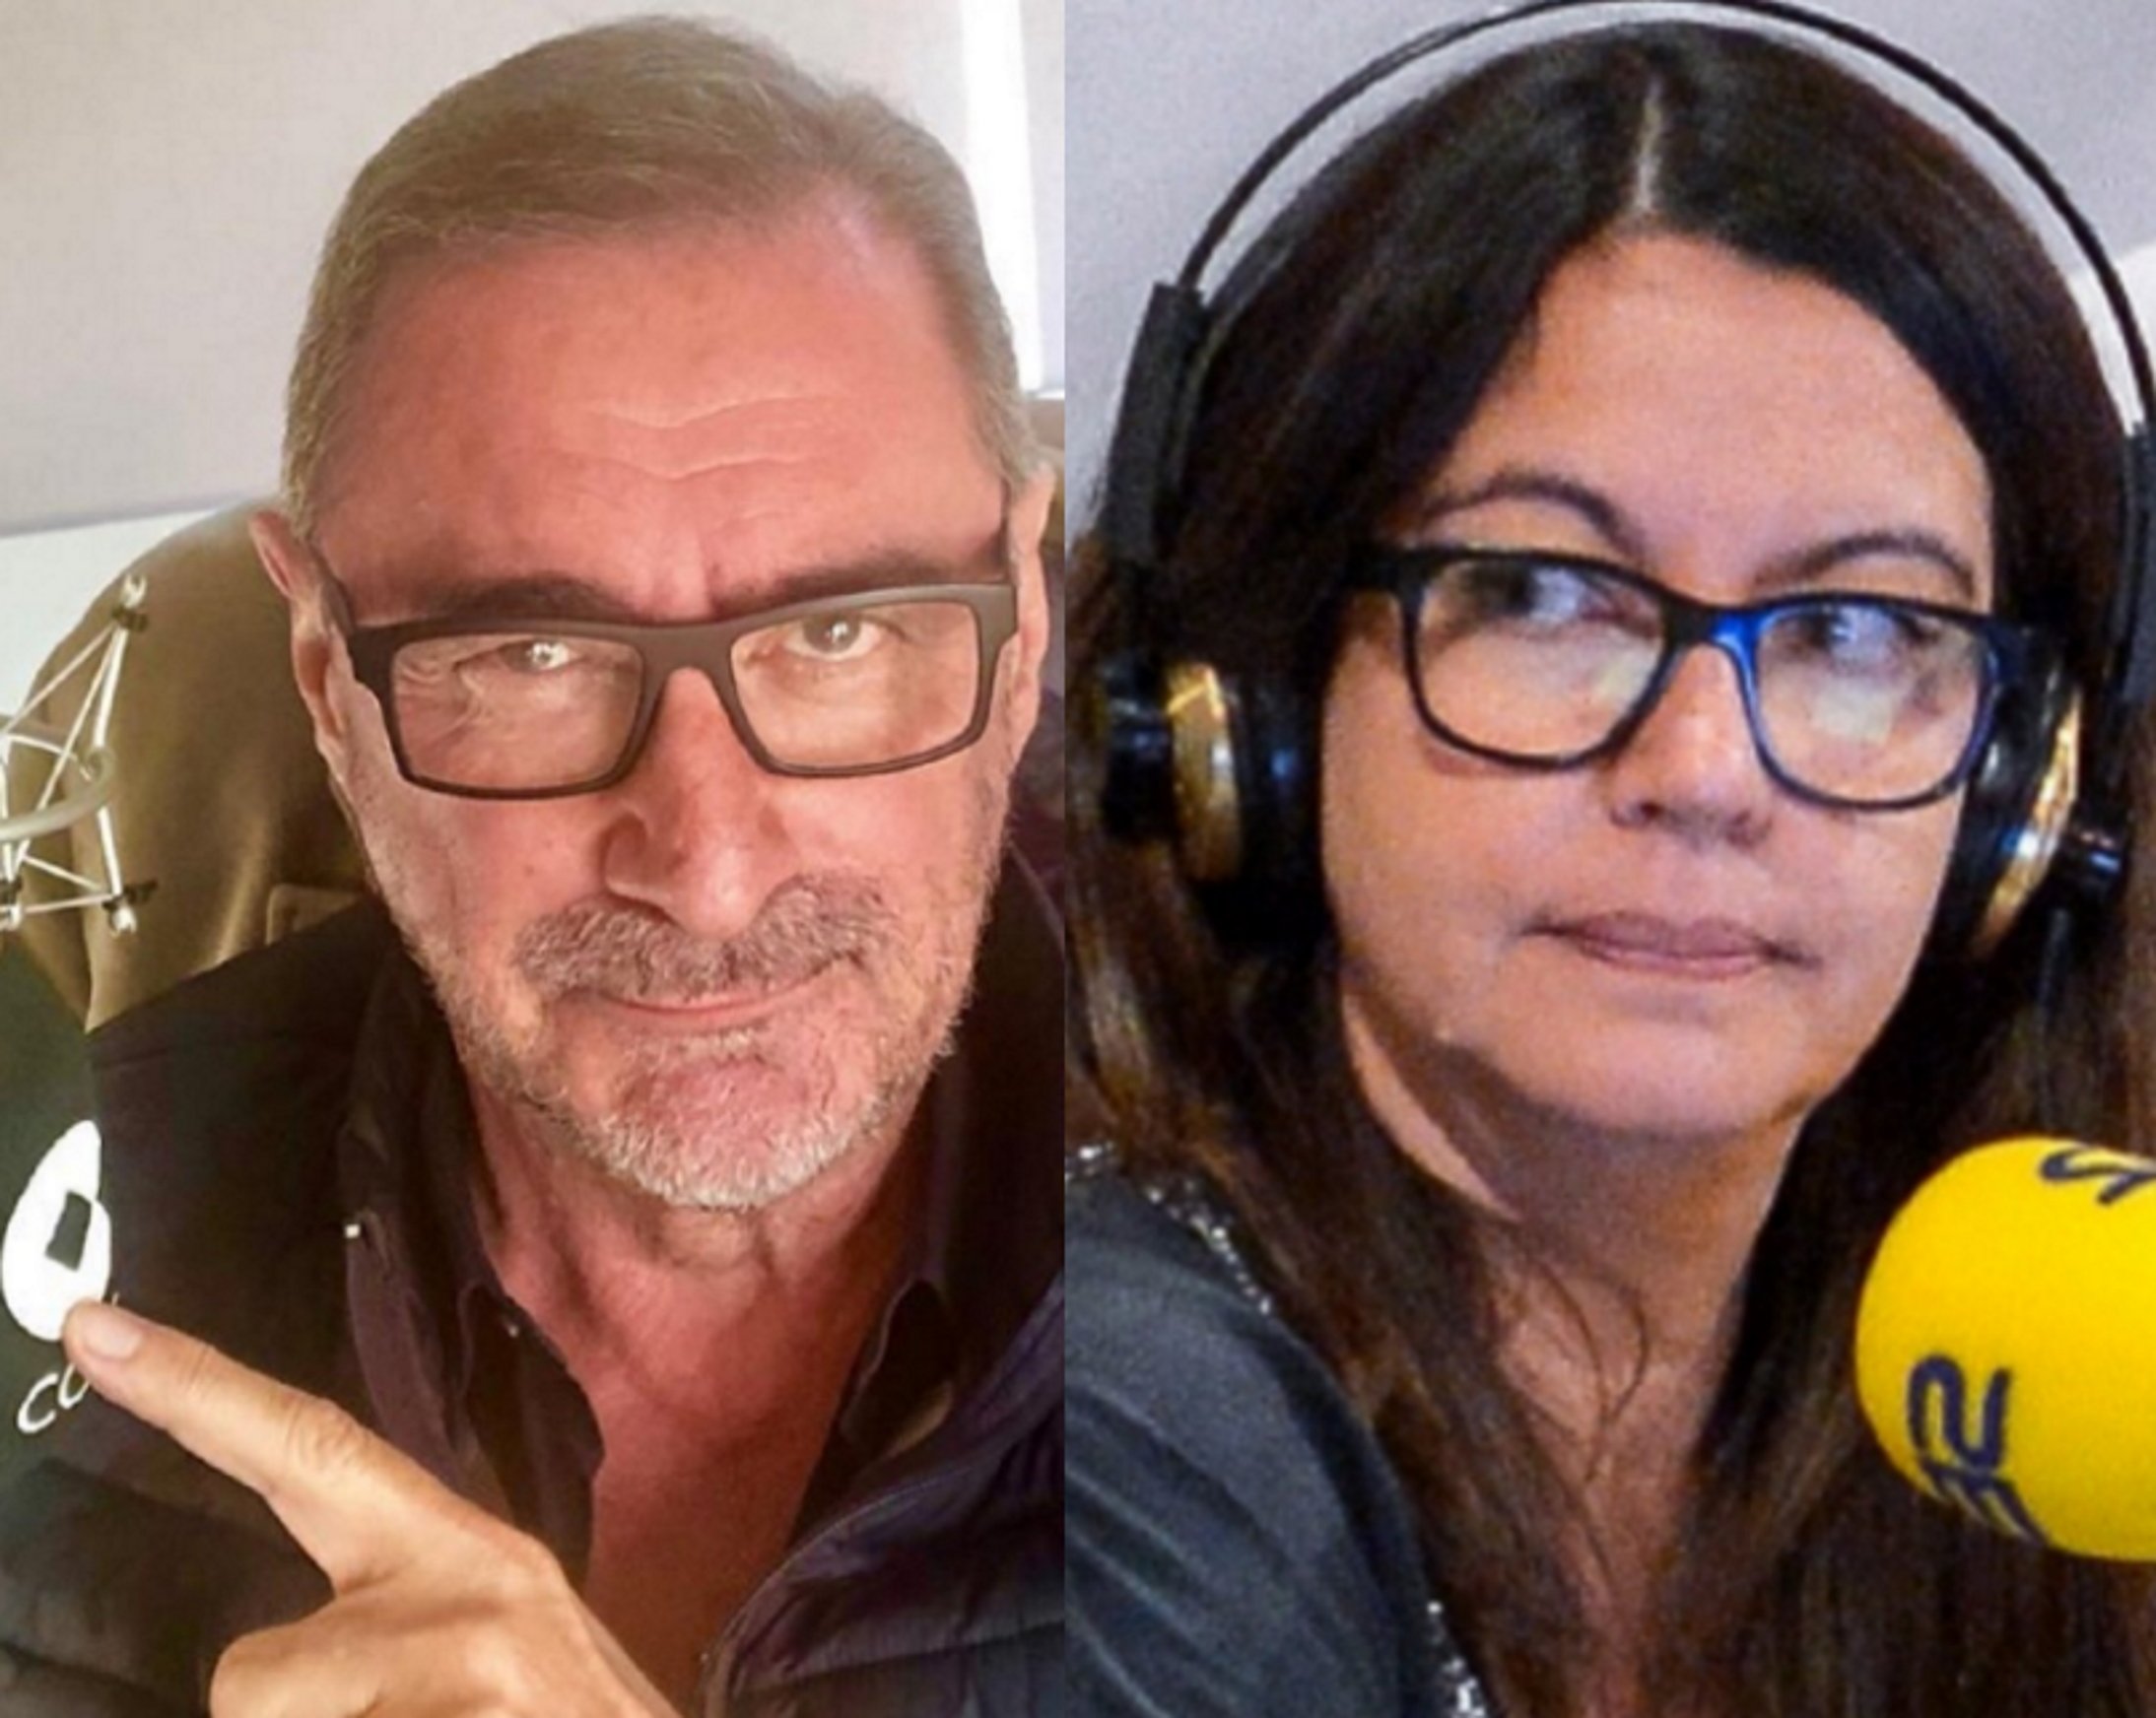 Los sueldos millonarios de Herrera o Barceló peligran: tijeretazos en la radio